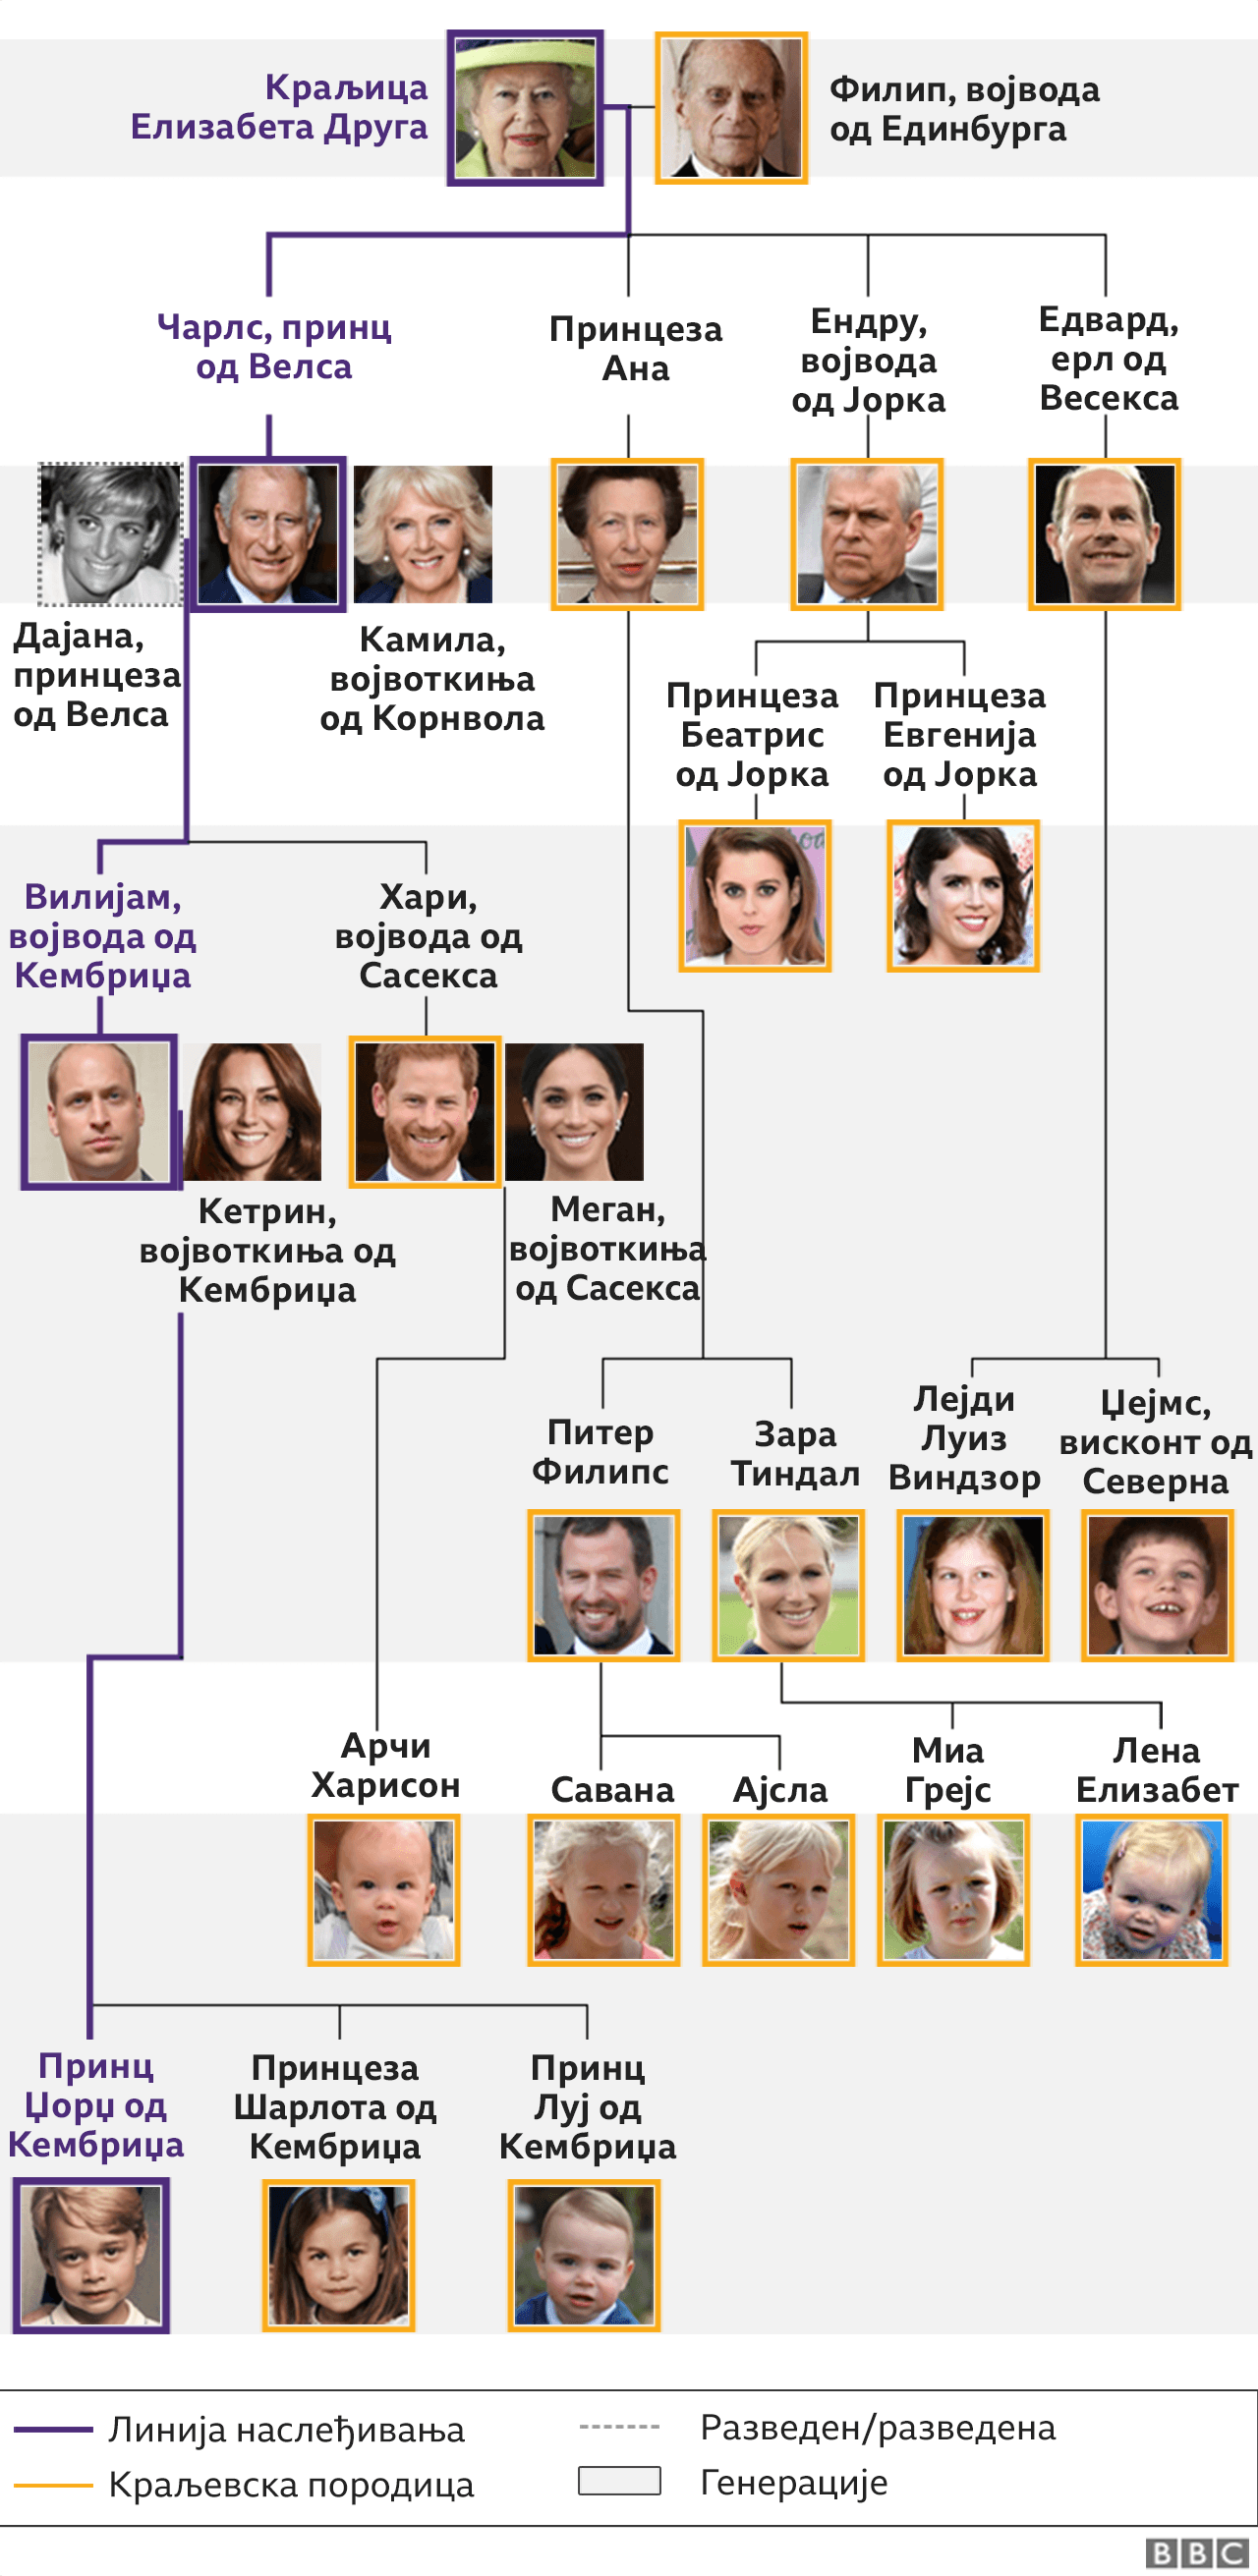 kraljevska porodica, stablo kraljevske porodice